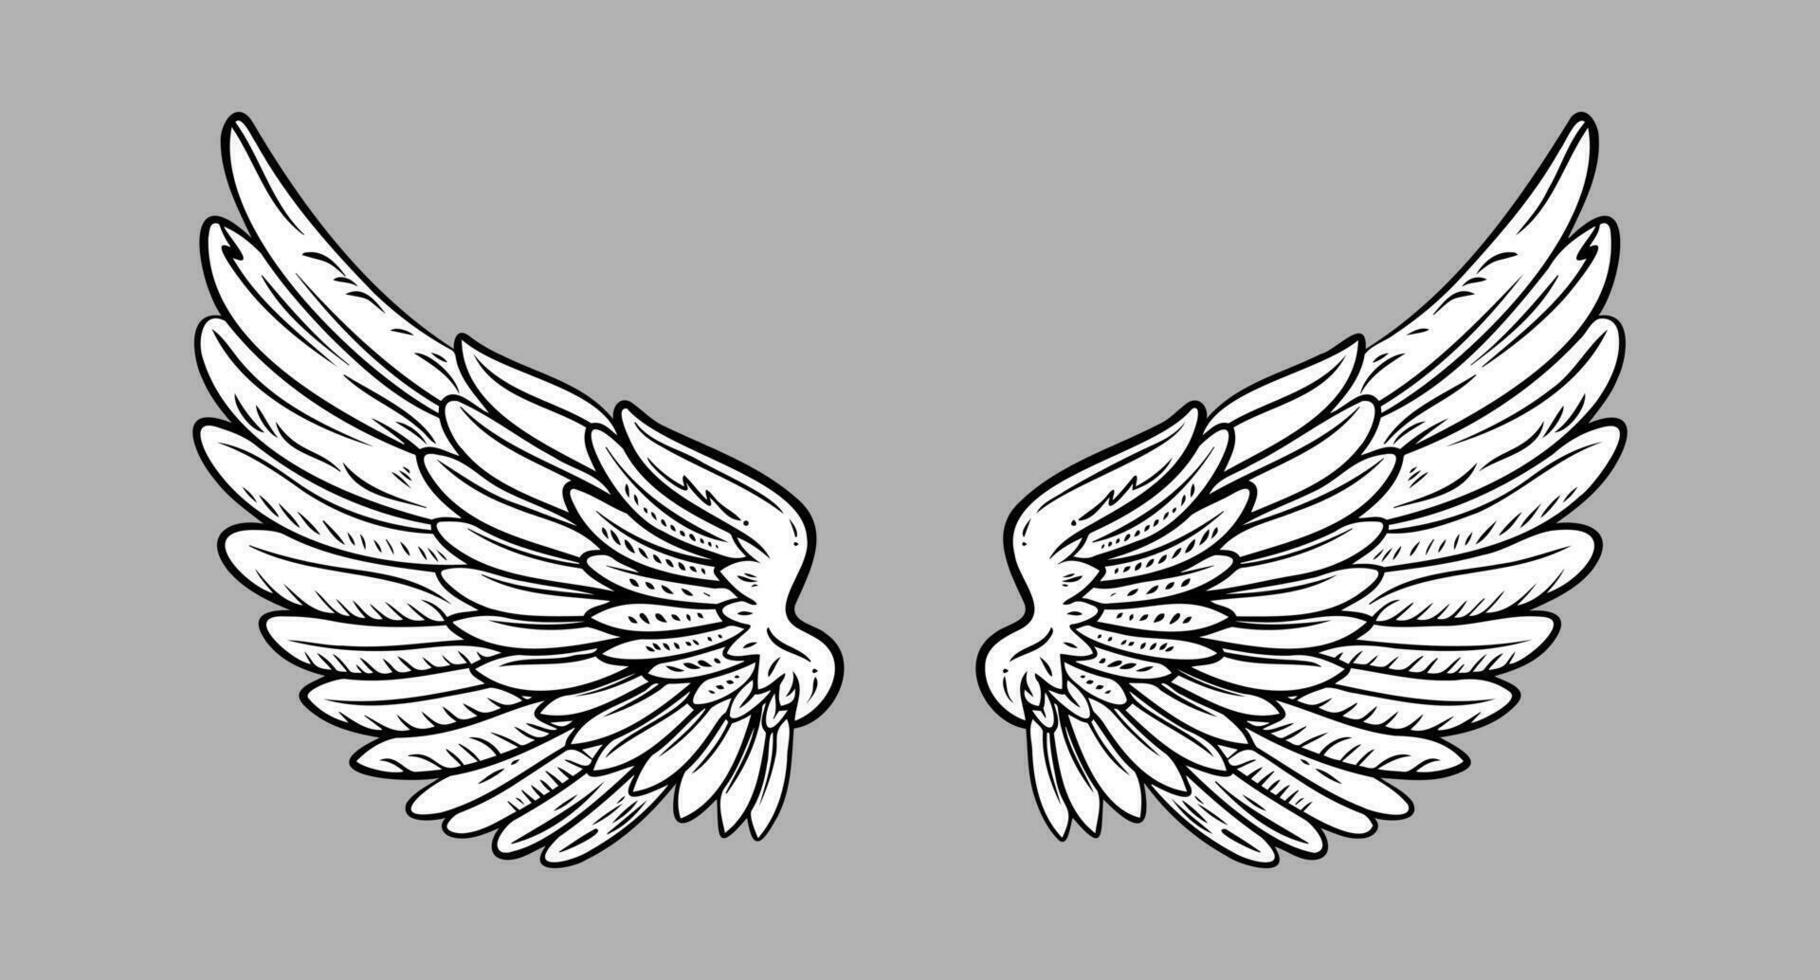 skiss ängel vingar. ängel fjäder vinge. vektor illustration.